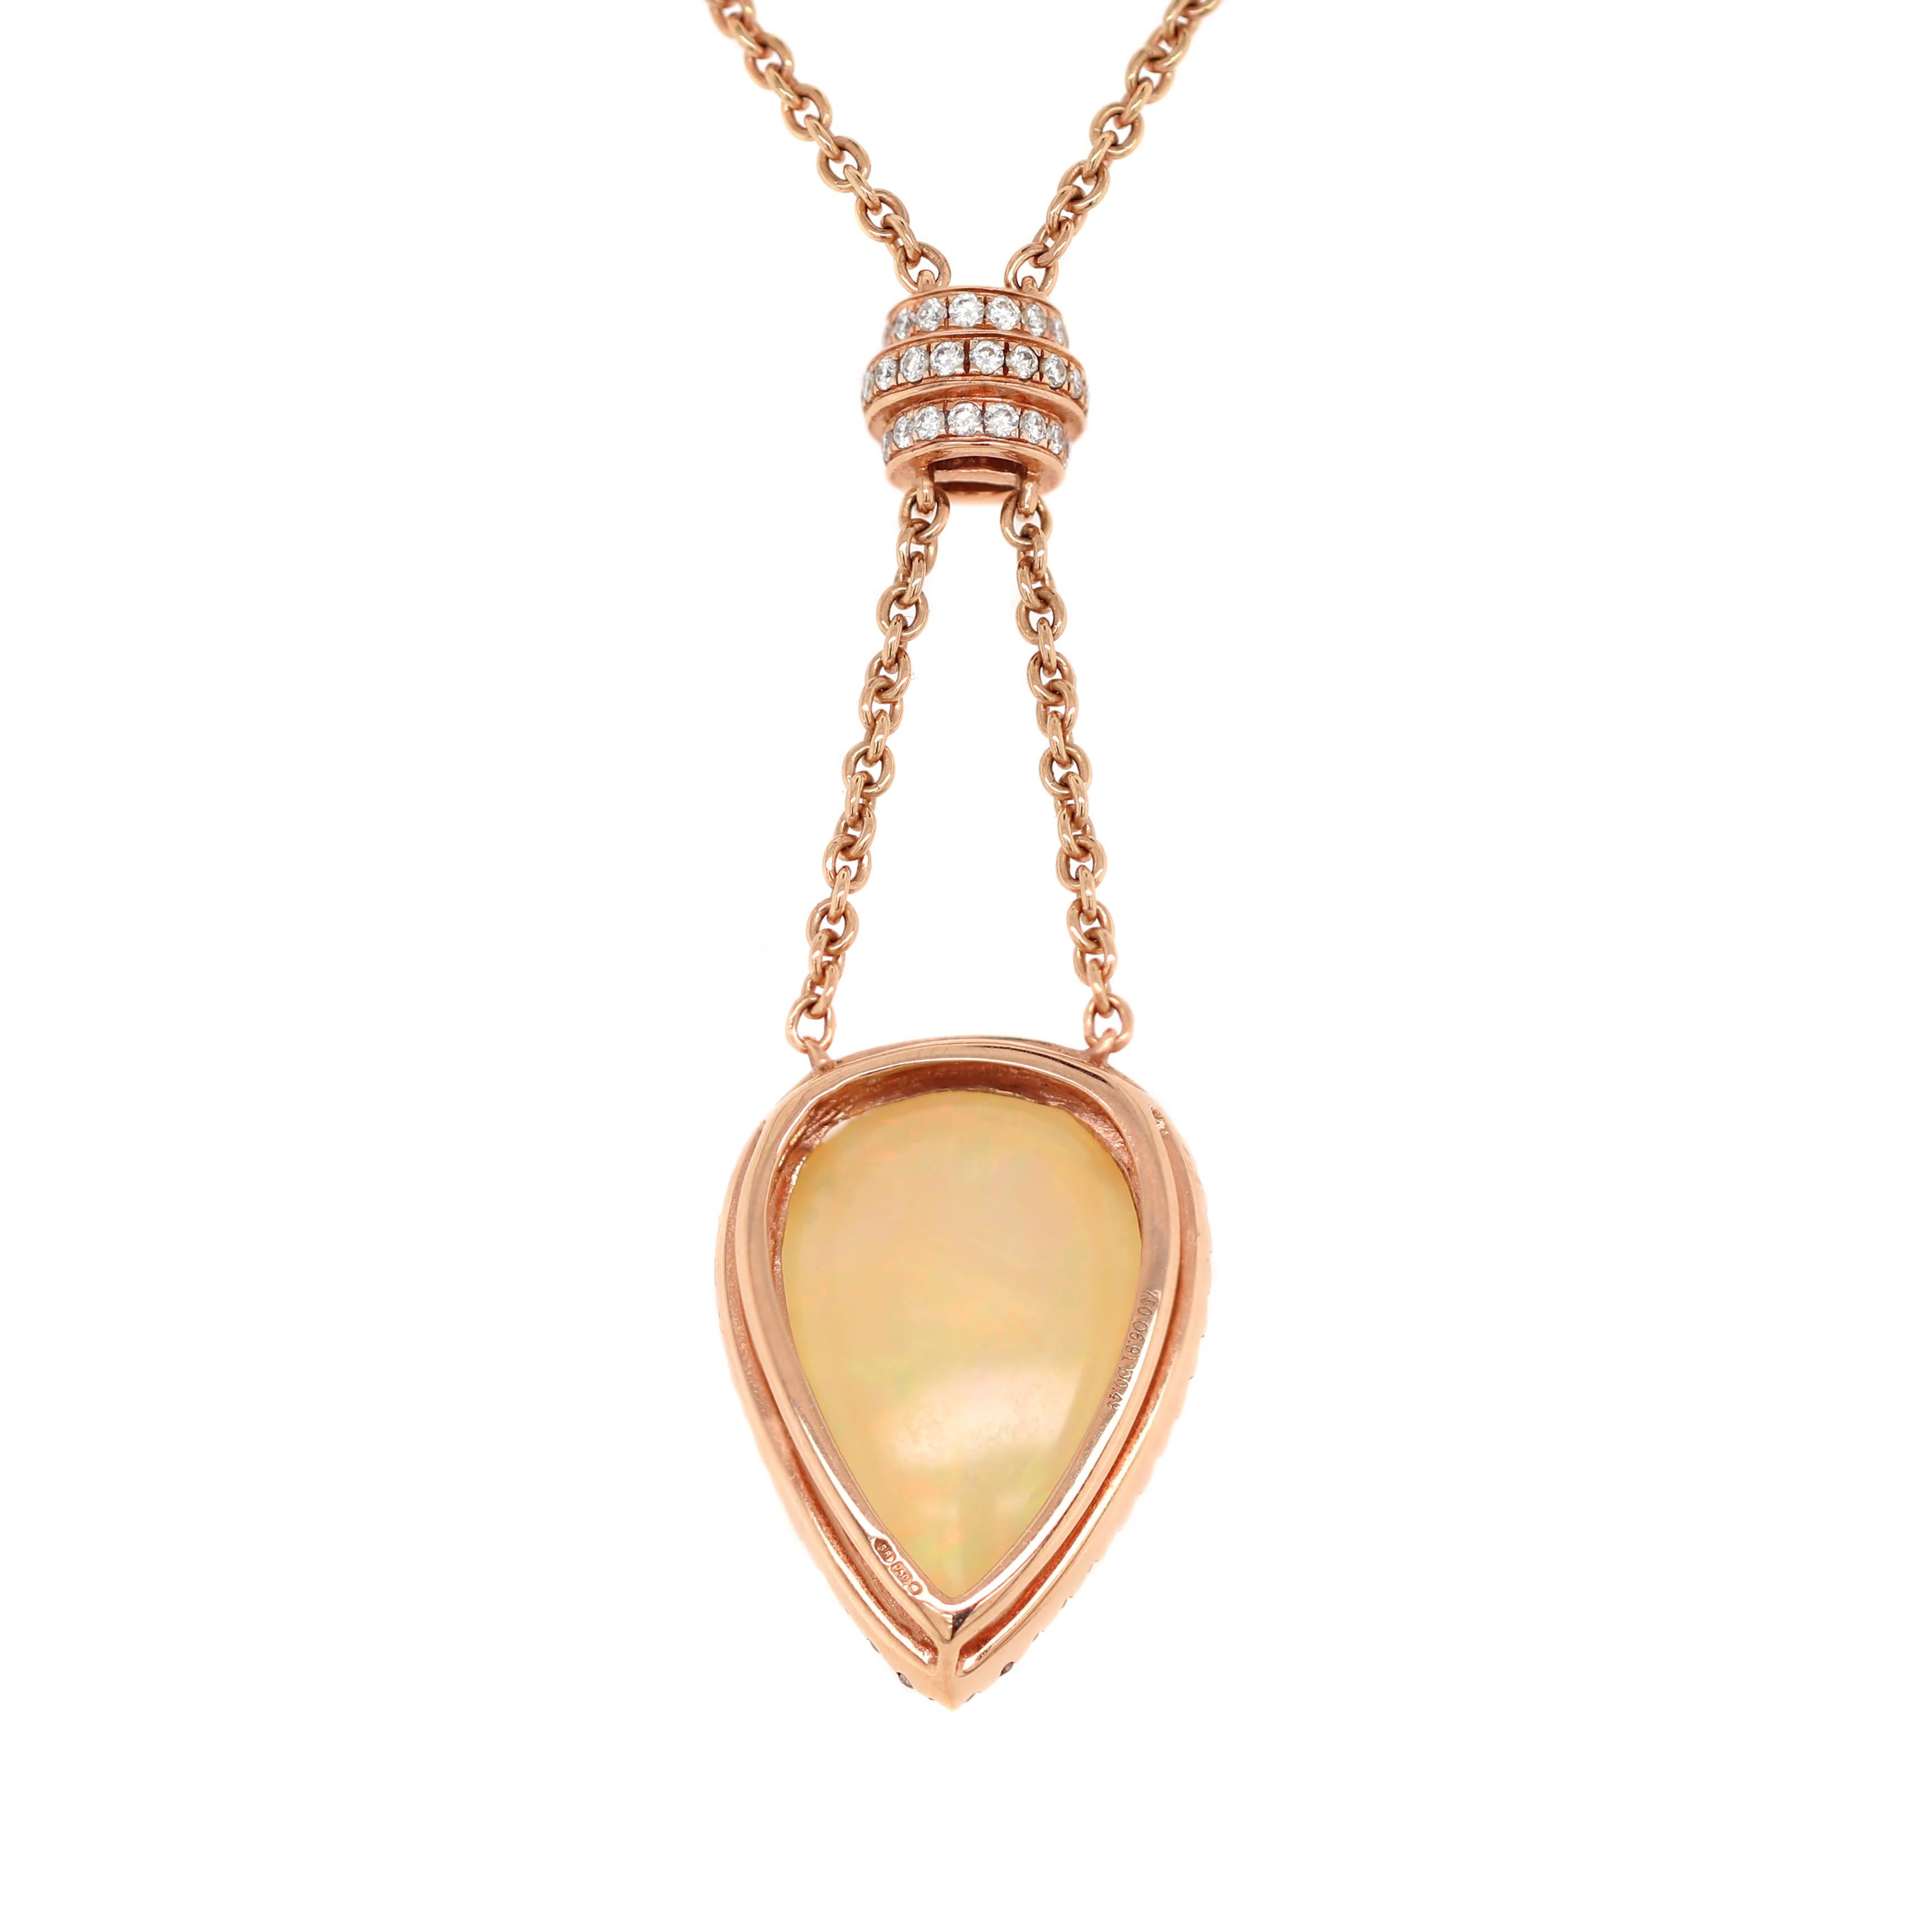 Cette magnifique pièce présente une opale cabochon éthiopienne lustrée en forme de poire pesant 6.91ct, montée dans une monture ouverte à trois griffes. L'opale est magnifiquement entourée de 42 diamants ronds de taille brillant reliés à une fine